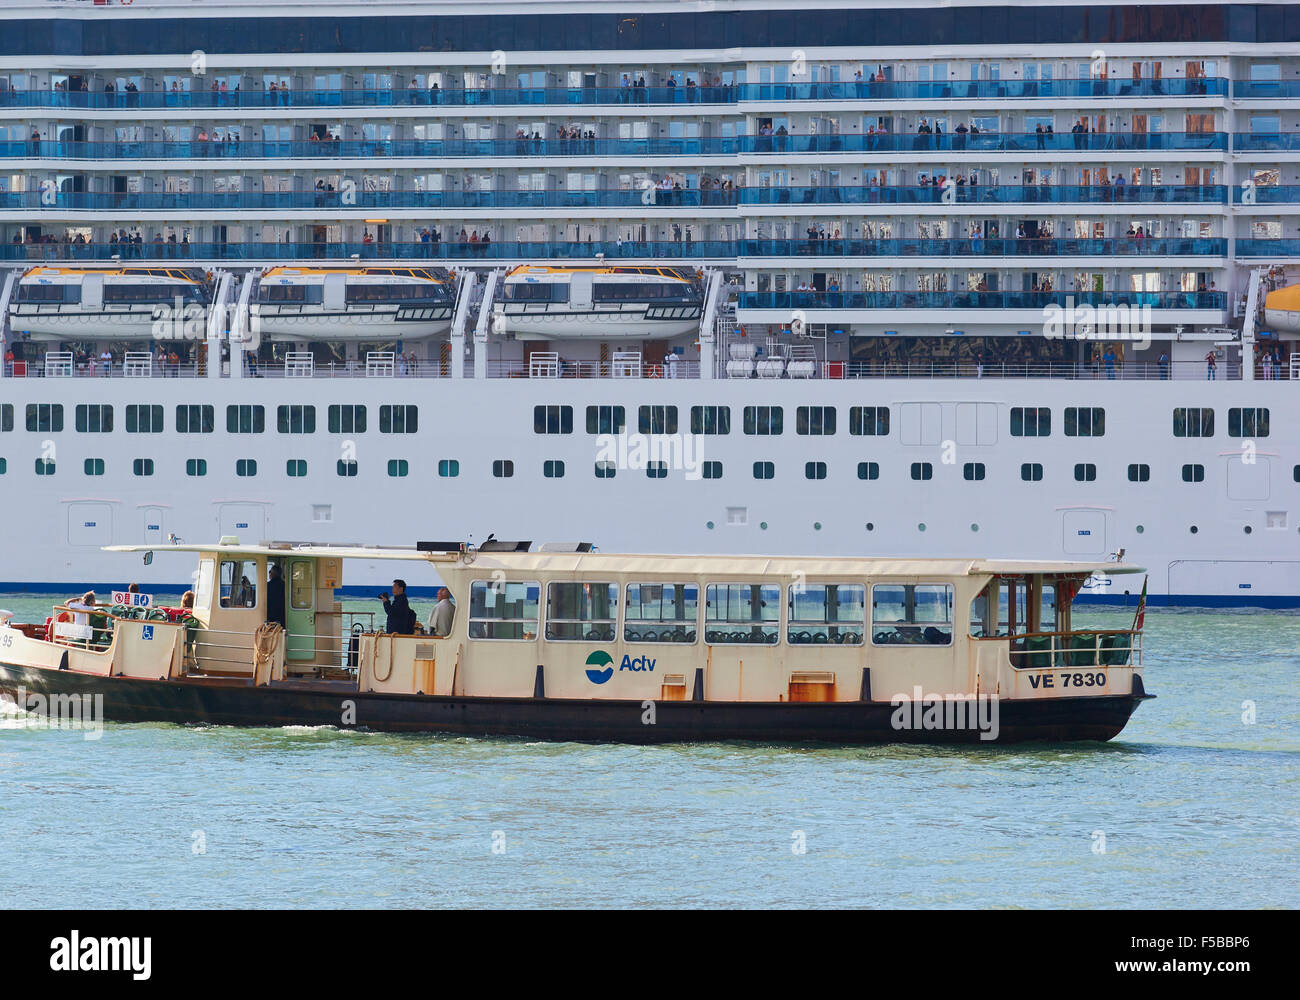 Riesige Kreuzfahrtschiff und Vaporetto (Wasserbus) nebeneinander in der venezianischen Lagune Venedig Veneto Italien Europa Stockfoto